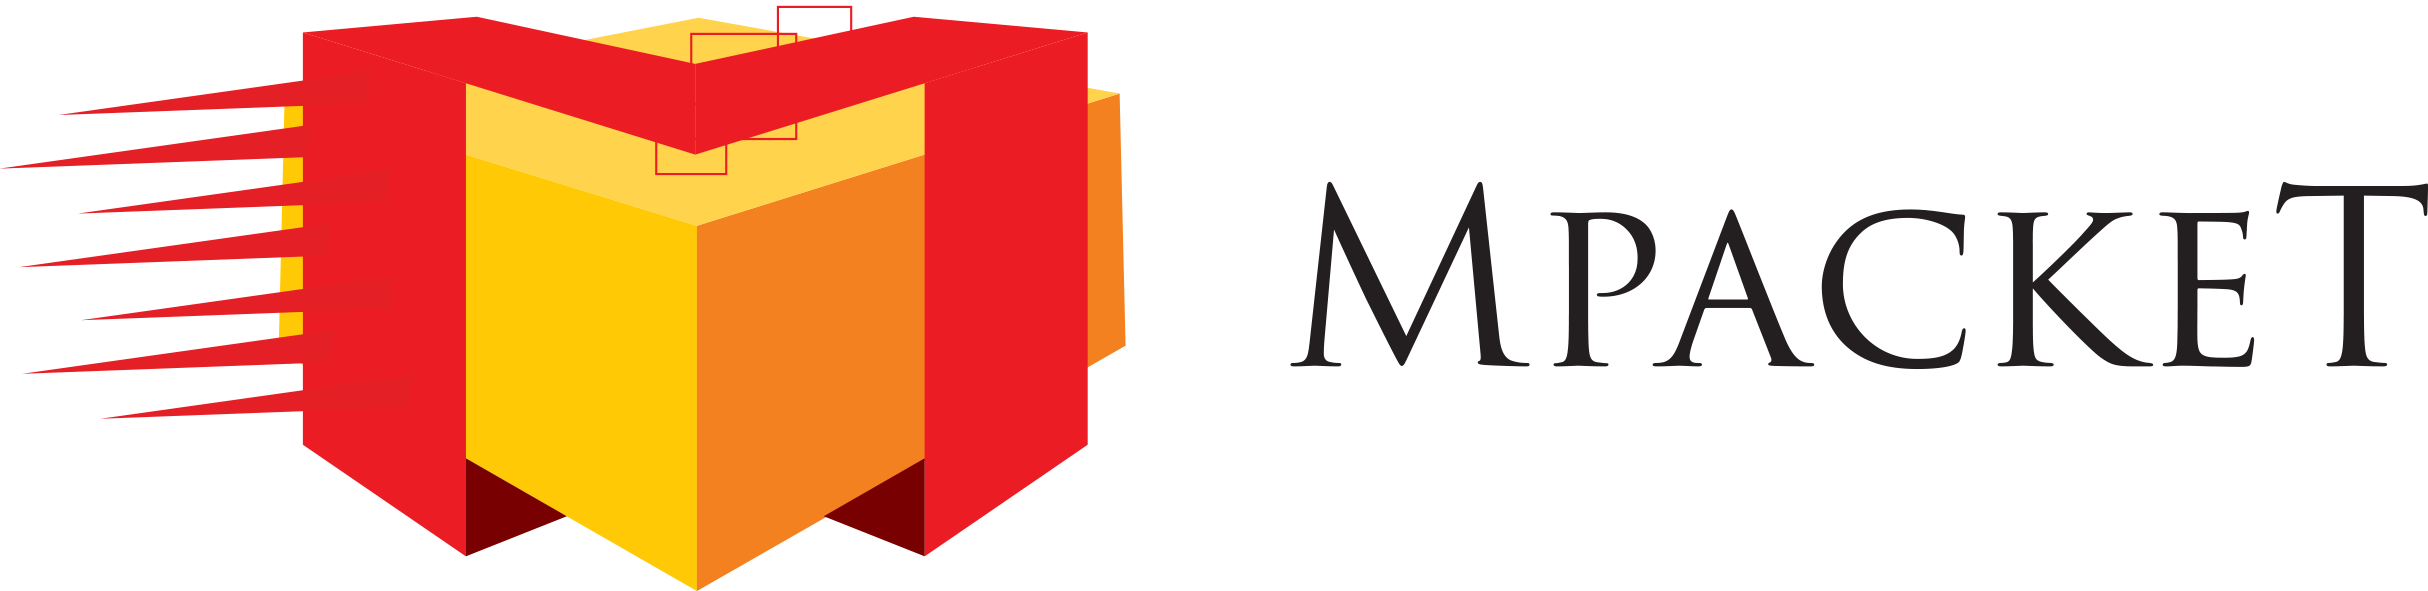 Logo MPacket